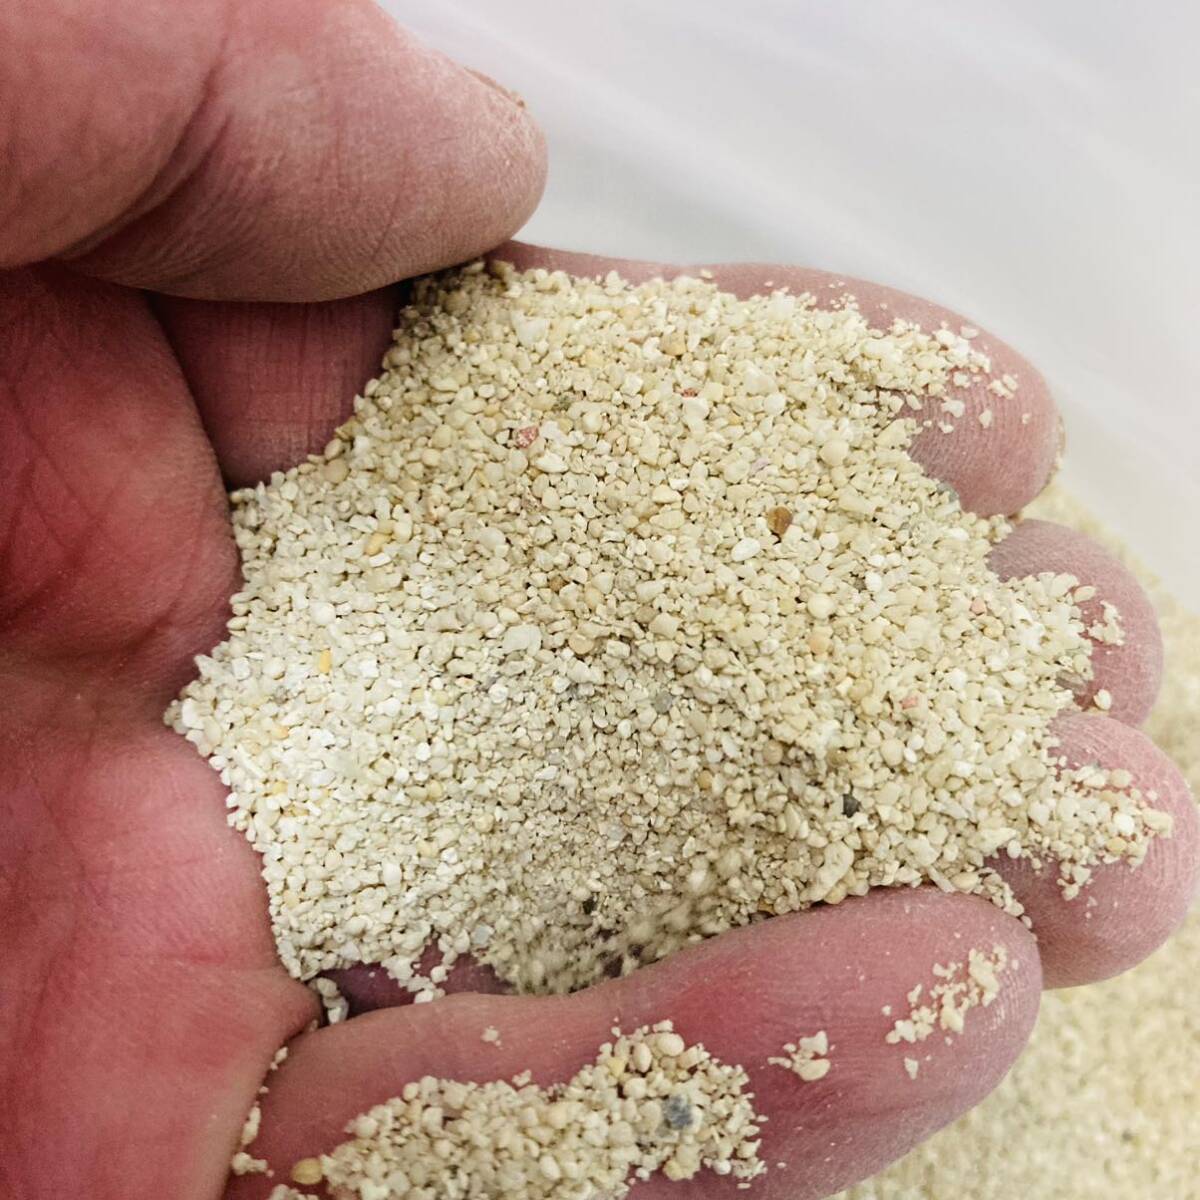  натуральный .. песок 1kg san . песок коралл песок фильтрующий материал морская вода аквариум рак-отшельник Guppy 